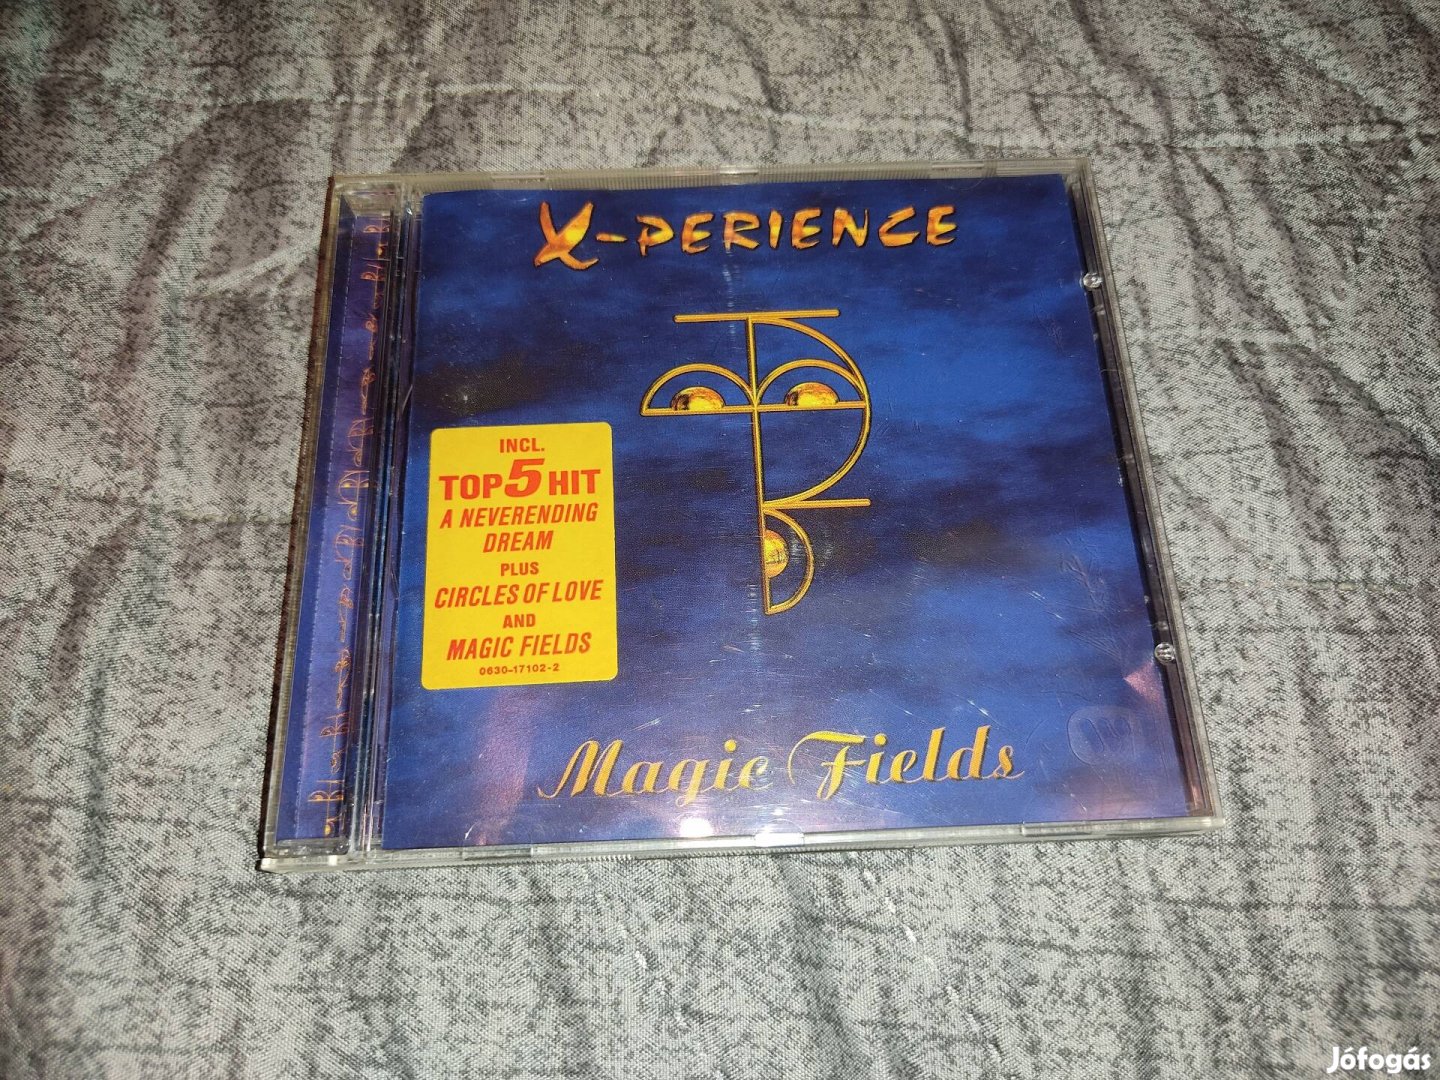 X-Perience - Magic Fields CD (1996)